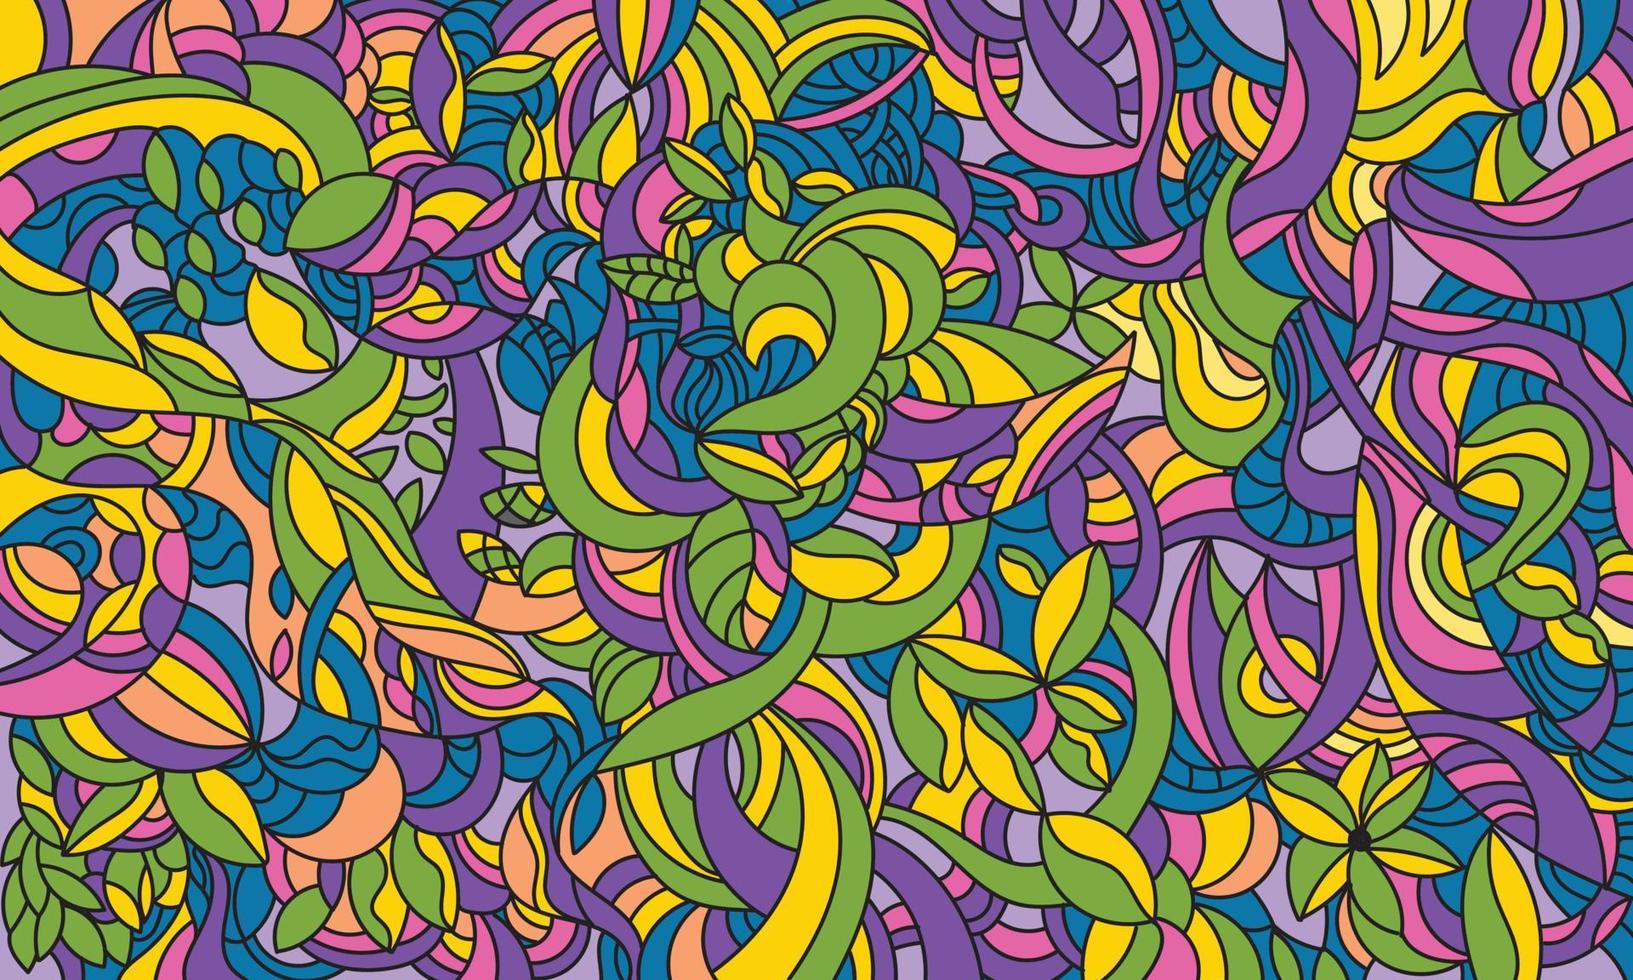 floral leaf pattern background doodle drawing vector illustration